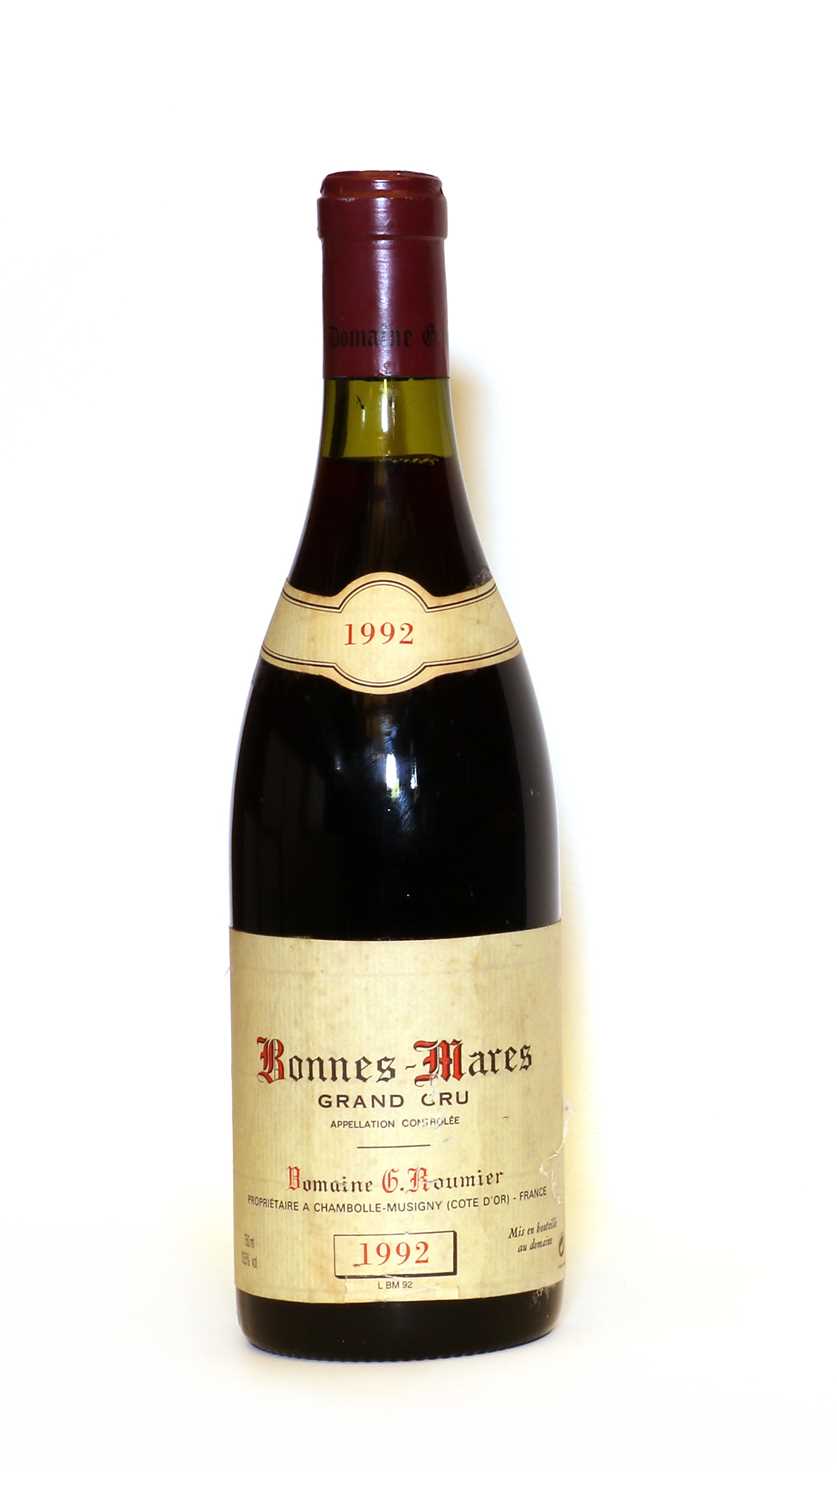 Lot 46 - Bonnes Mares, Grand Cru, Domaine G. Roumier, 1992, one bottle